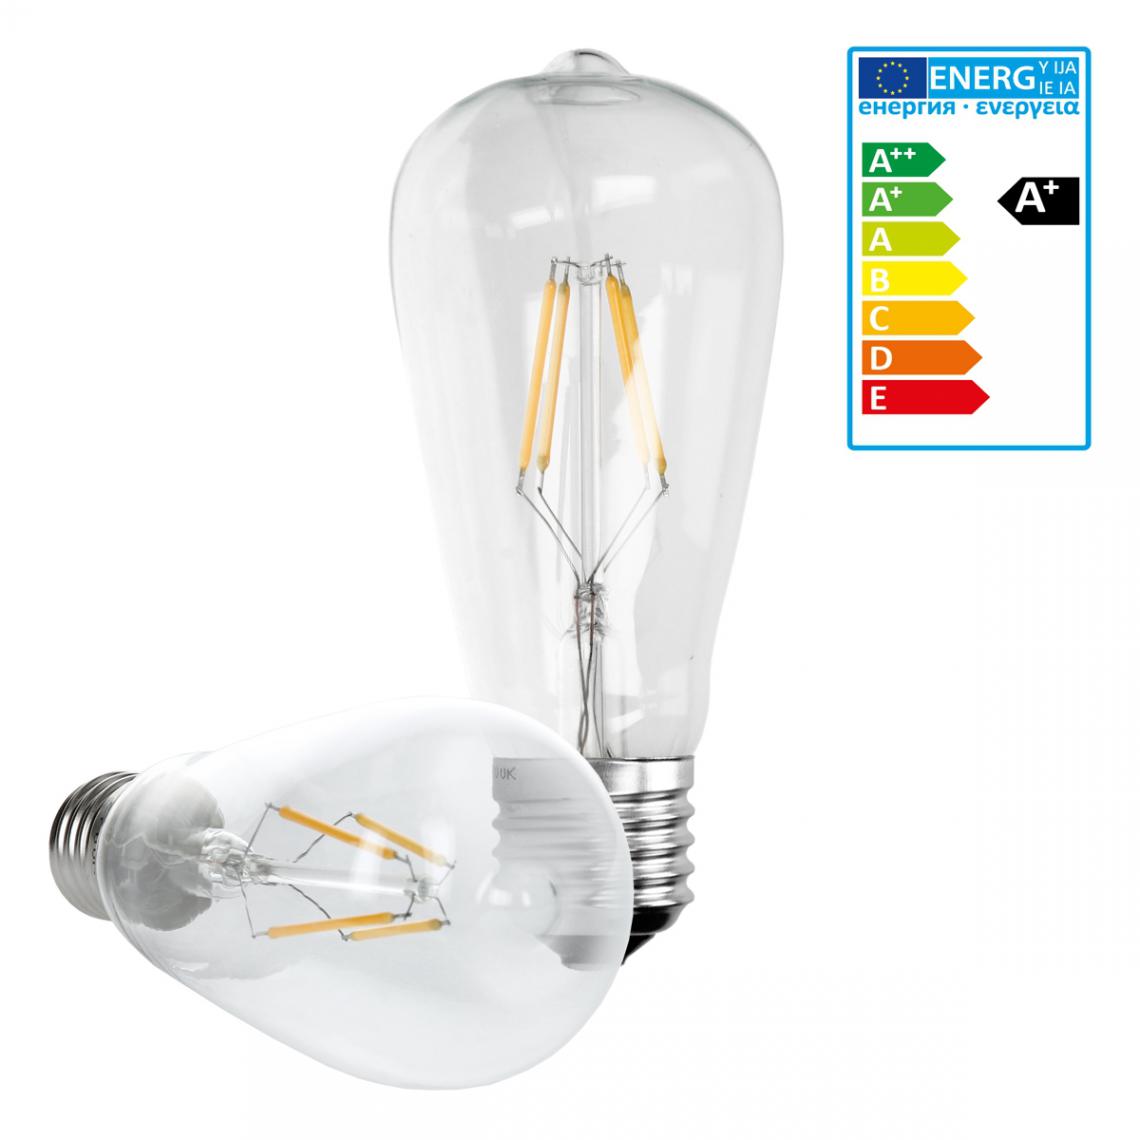 Ecd Germany - ECD Germany 6 x Ampoule LED Filament E27 Classic Edison 4W 408 Lumens 120 ° Angle de faisceau AC 220-240V environ 20W ampoule à incandescence Blanc chaud - Ampoules LED